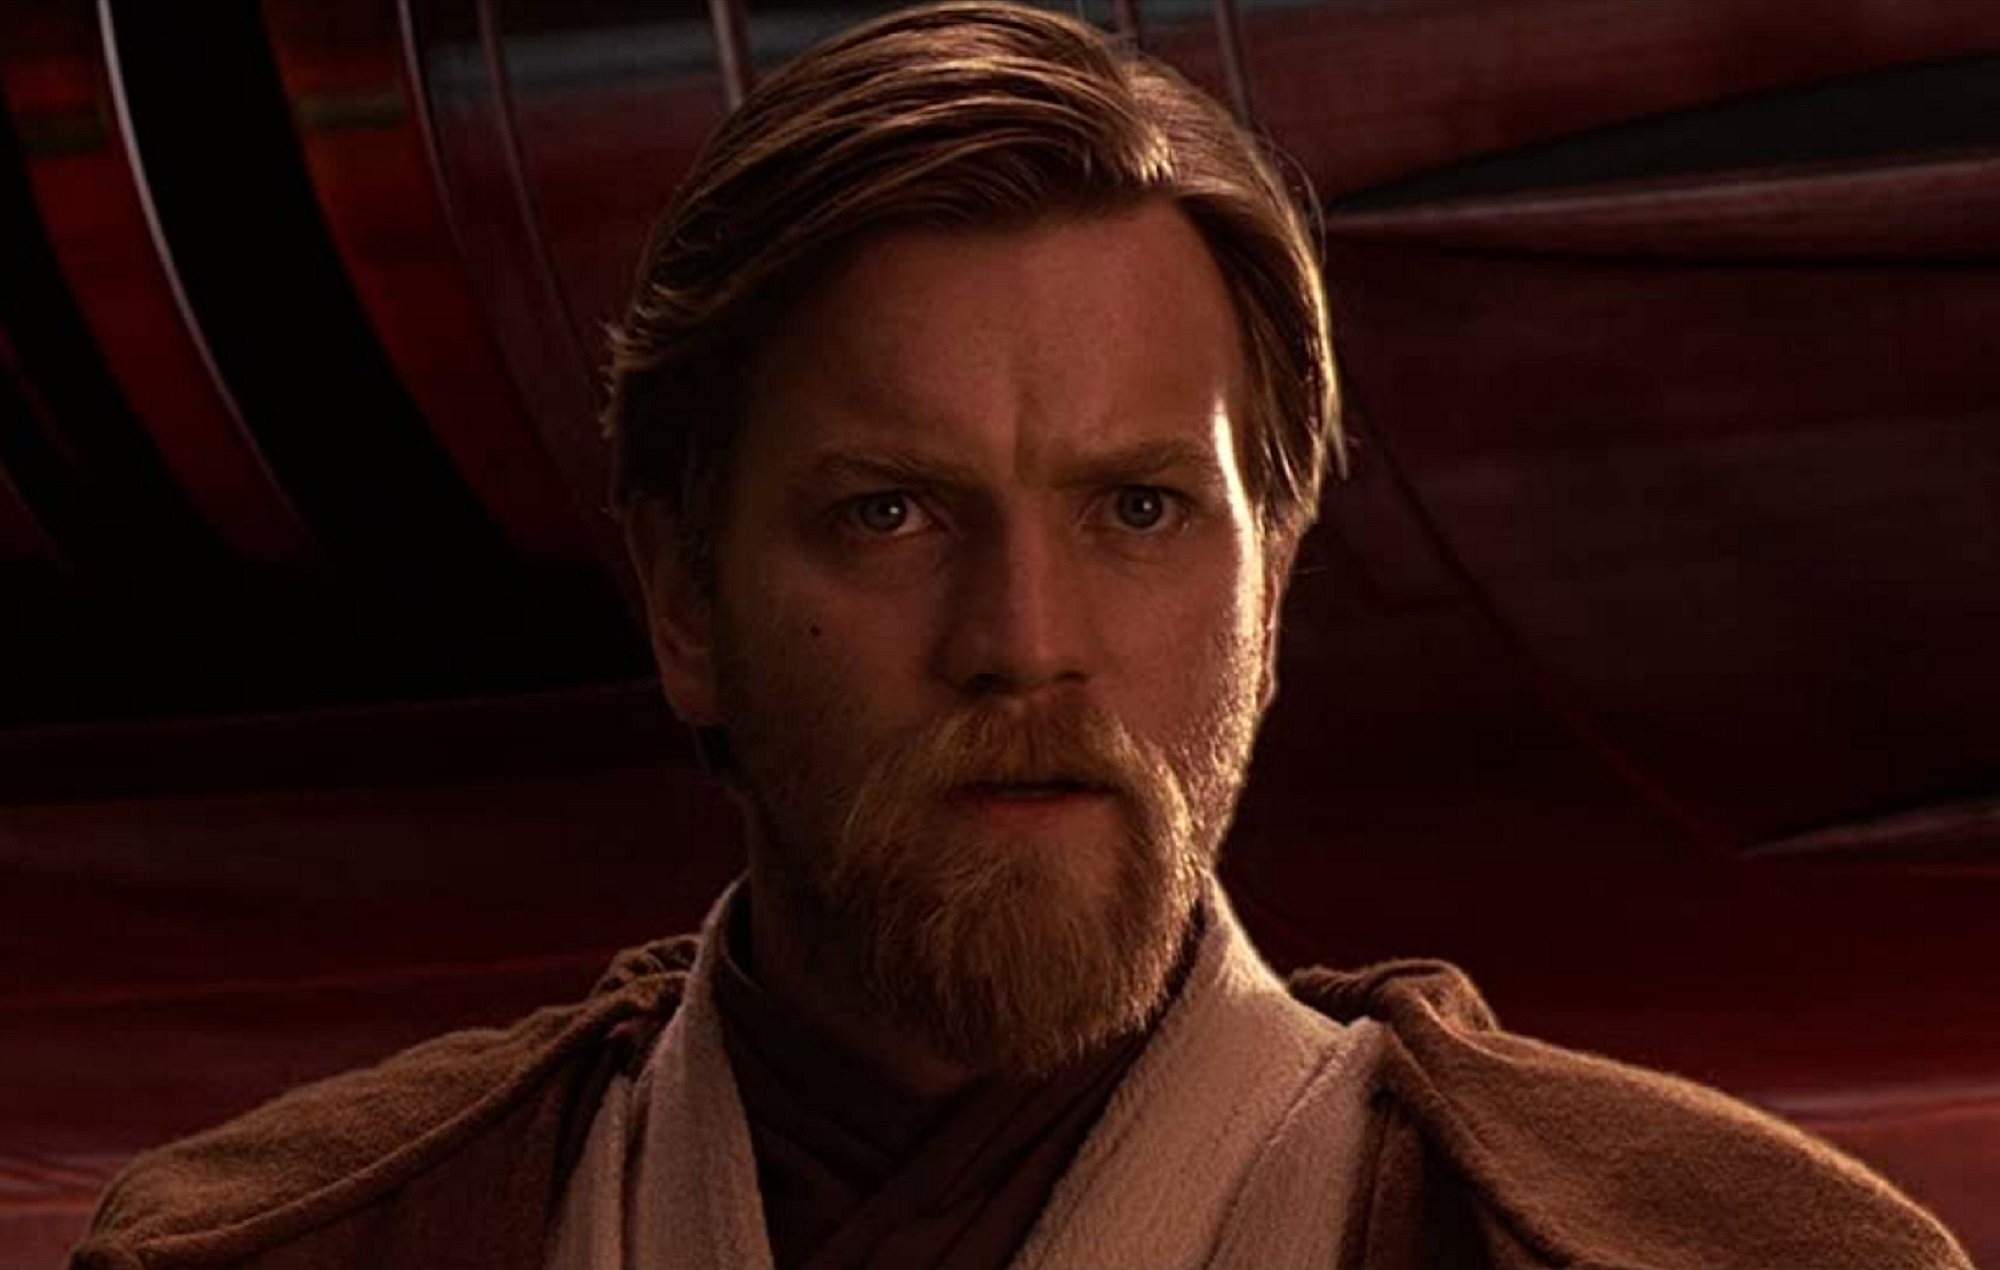 Ewan McGregor: ''Obi Wan Kenobi' Series Will Be More Real Than Prequels'